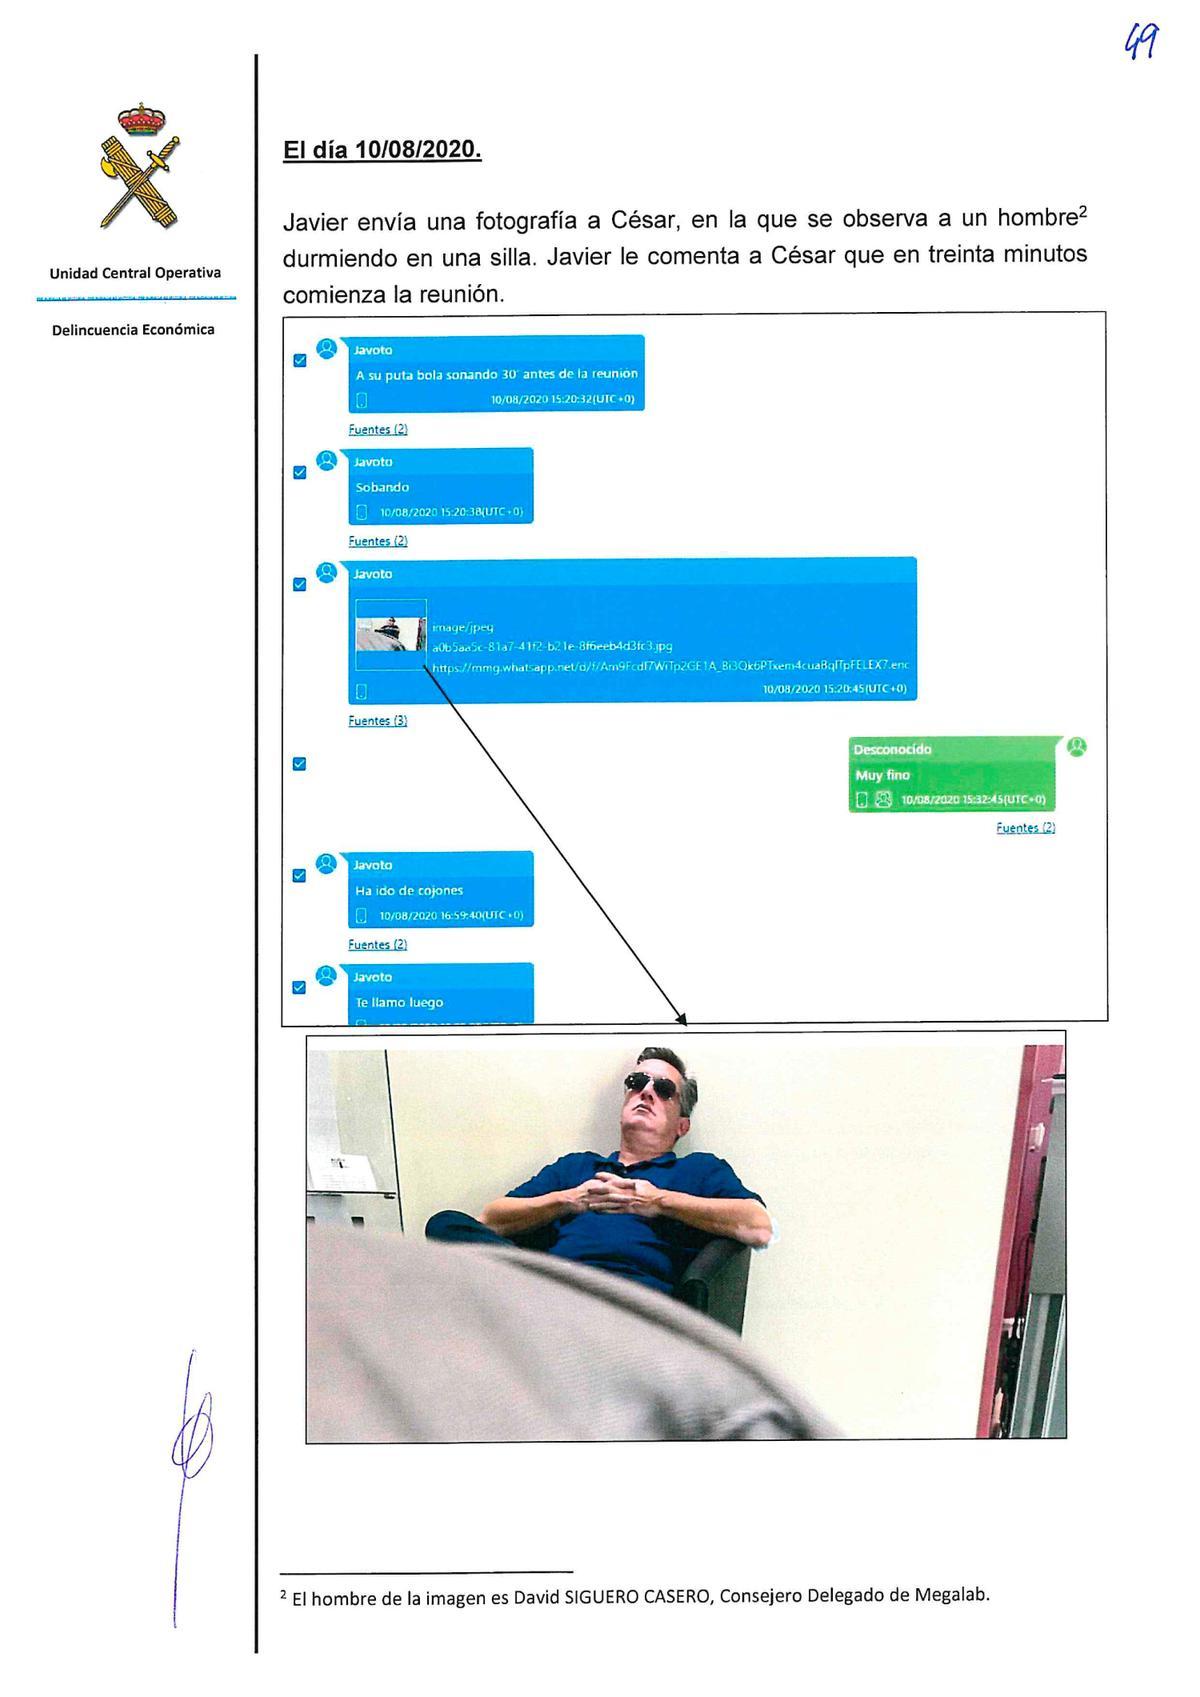 Página de la investigación de la UCO con el chat entre Serrano Costumnero y un desconocido en el que este envía una foto de Siguero Casero.